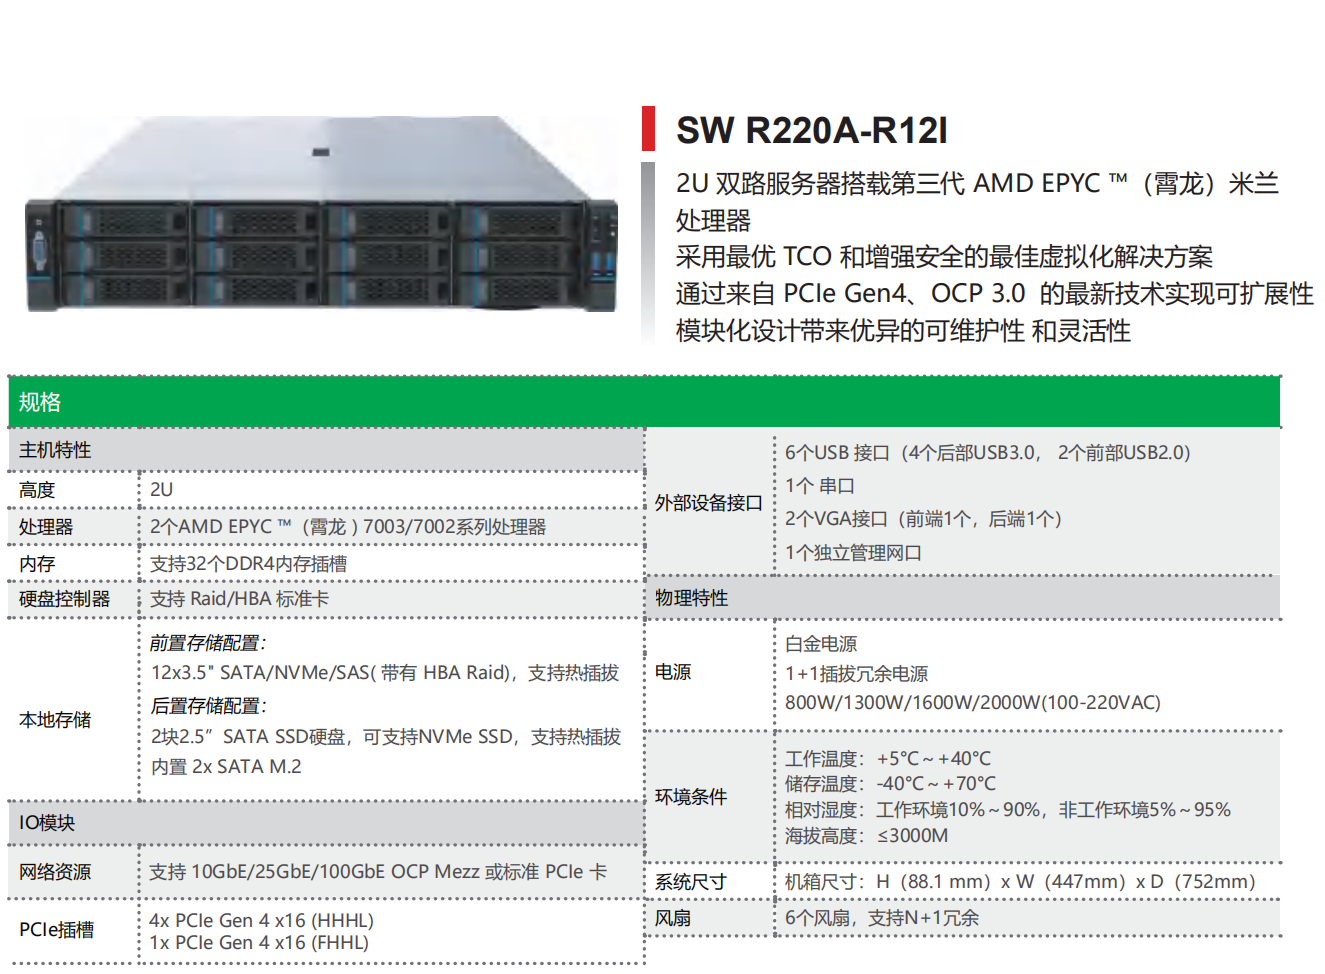 AMD 平台服务器—SW R220A-R12I(图1)